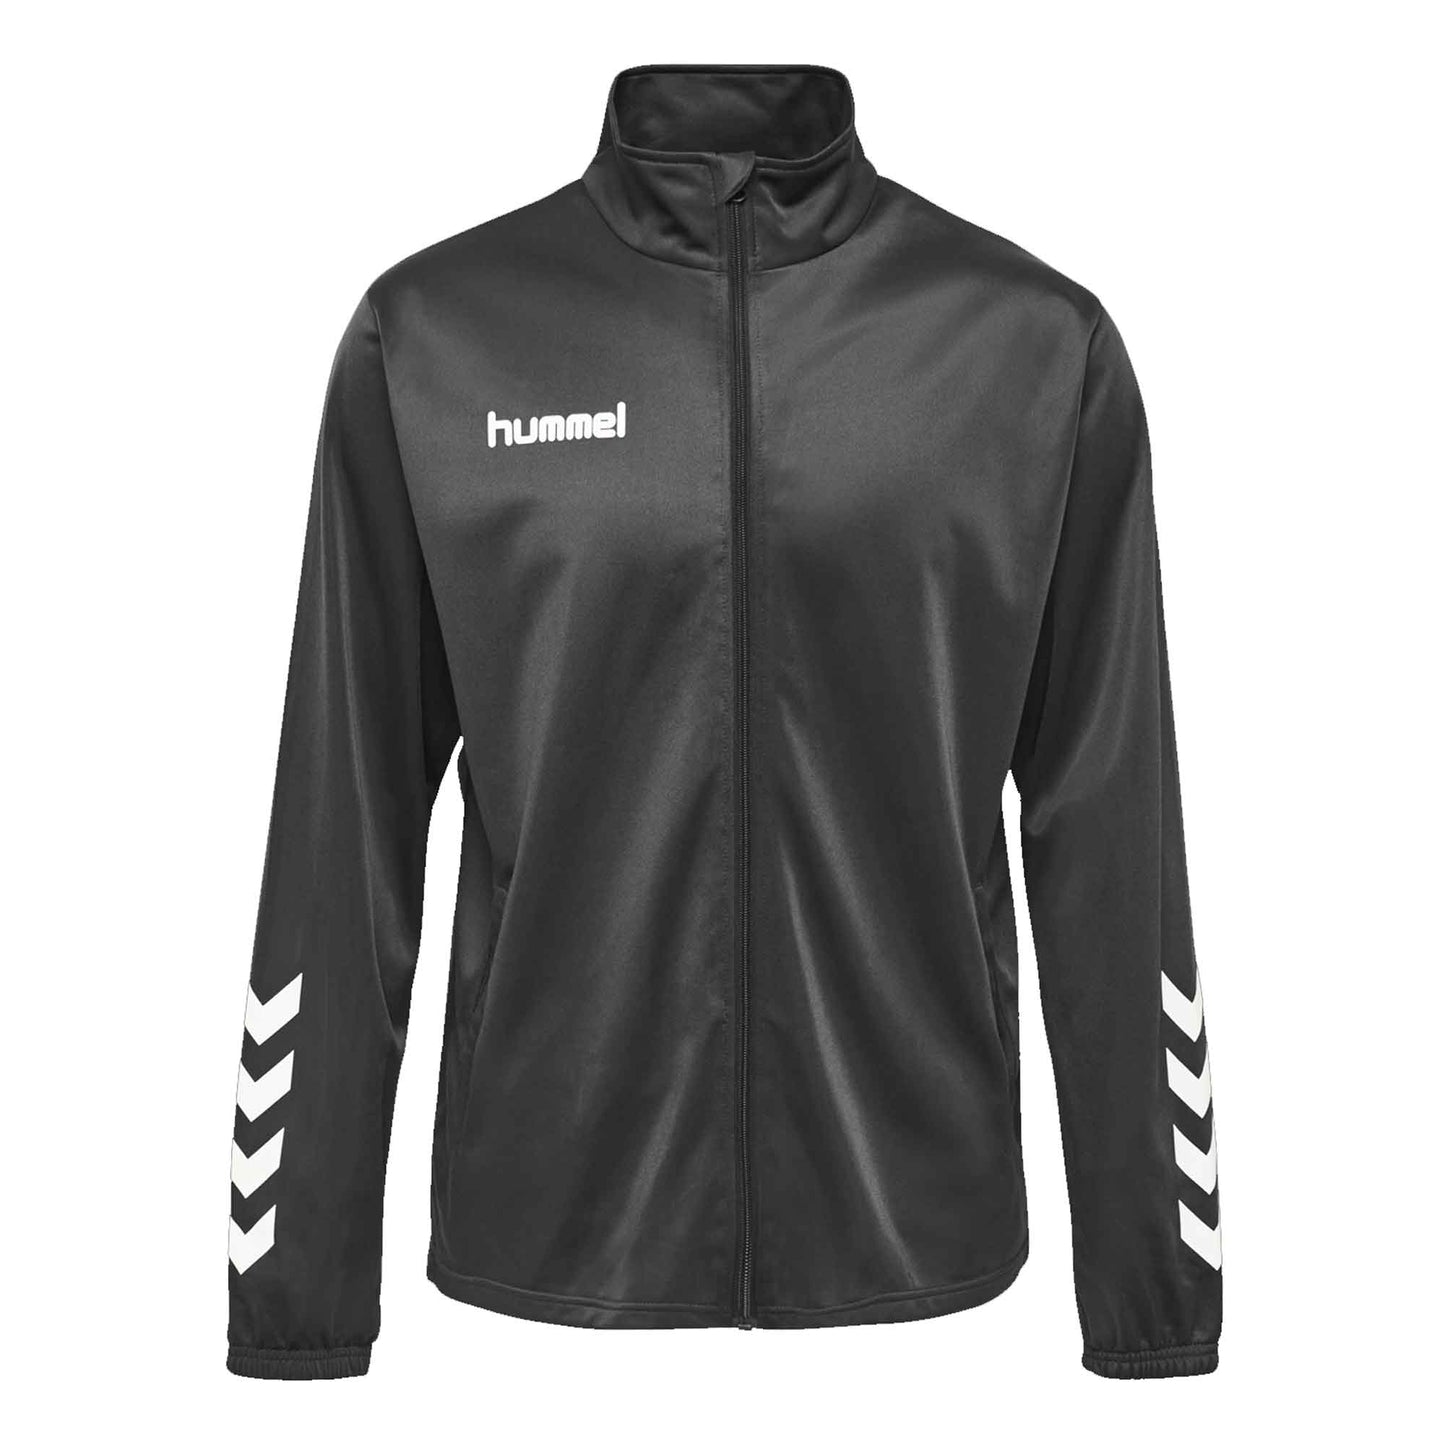 Hummel Boy's Arrow Printed Sports Zipper Jacket Boy's Jacket HAS Apparel Black 4 Years 